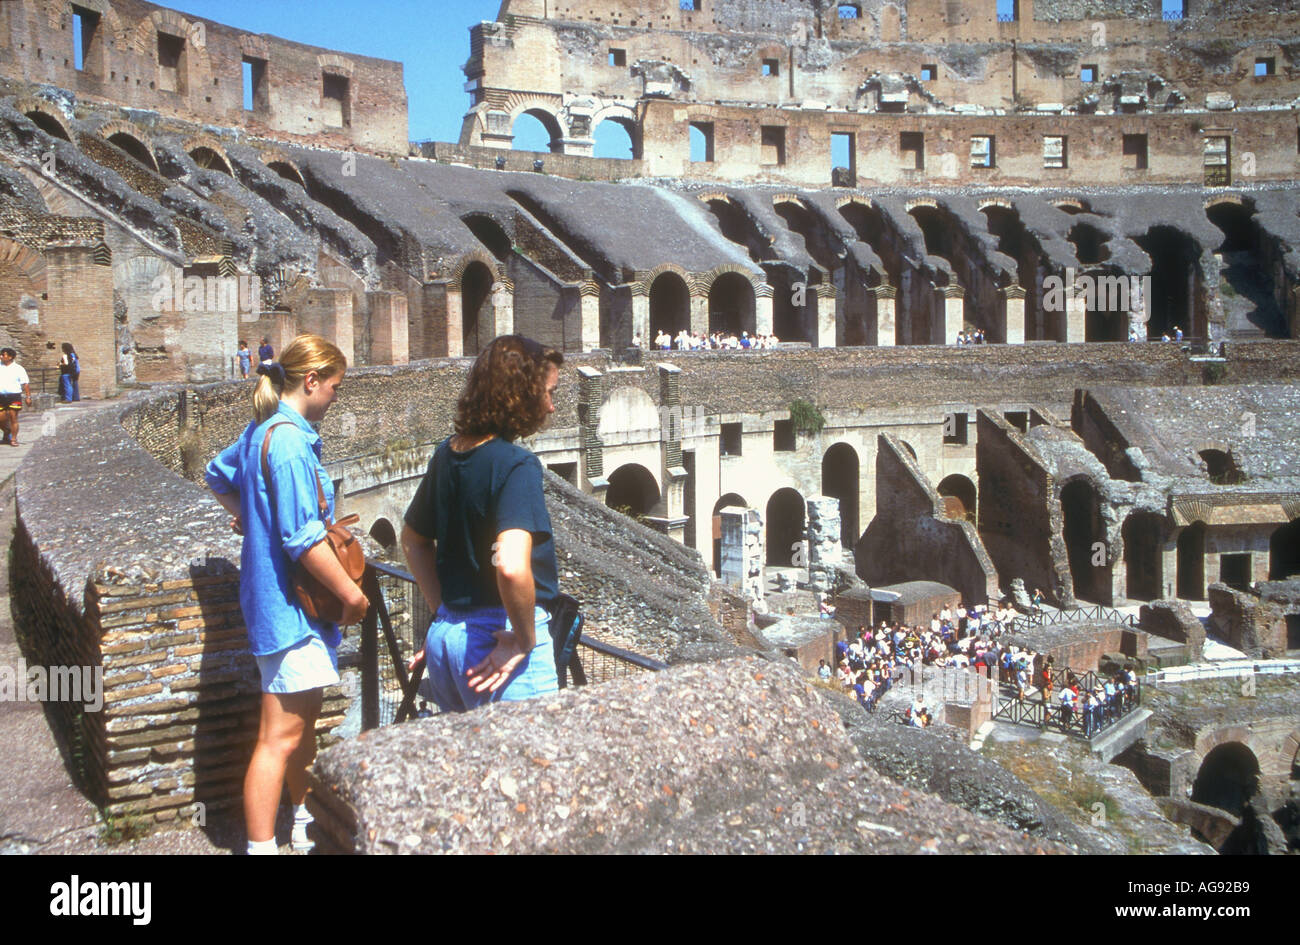 roman amphitheatre coliseum city of rome italy Stock Photo